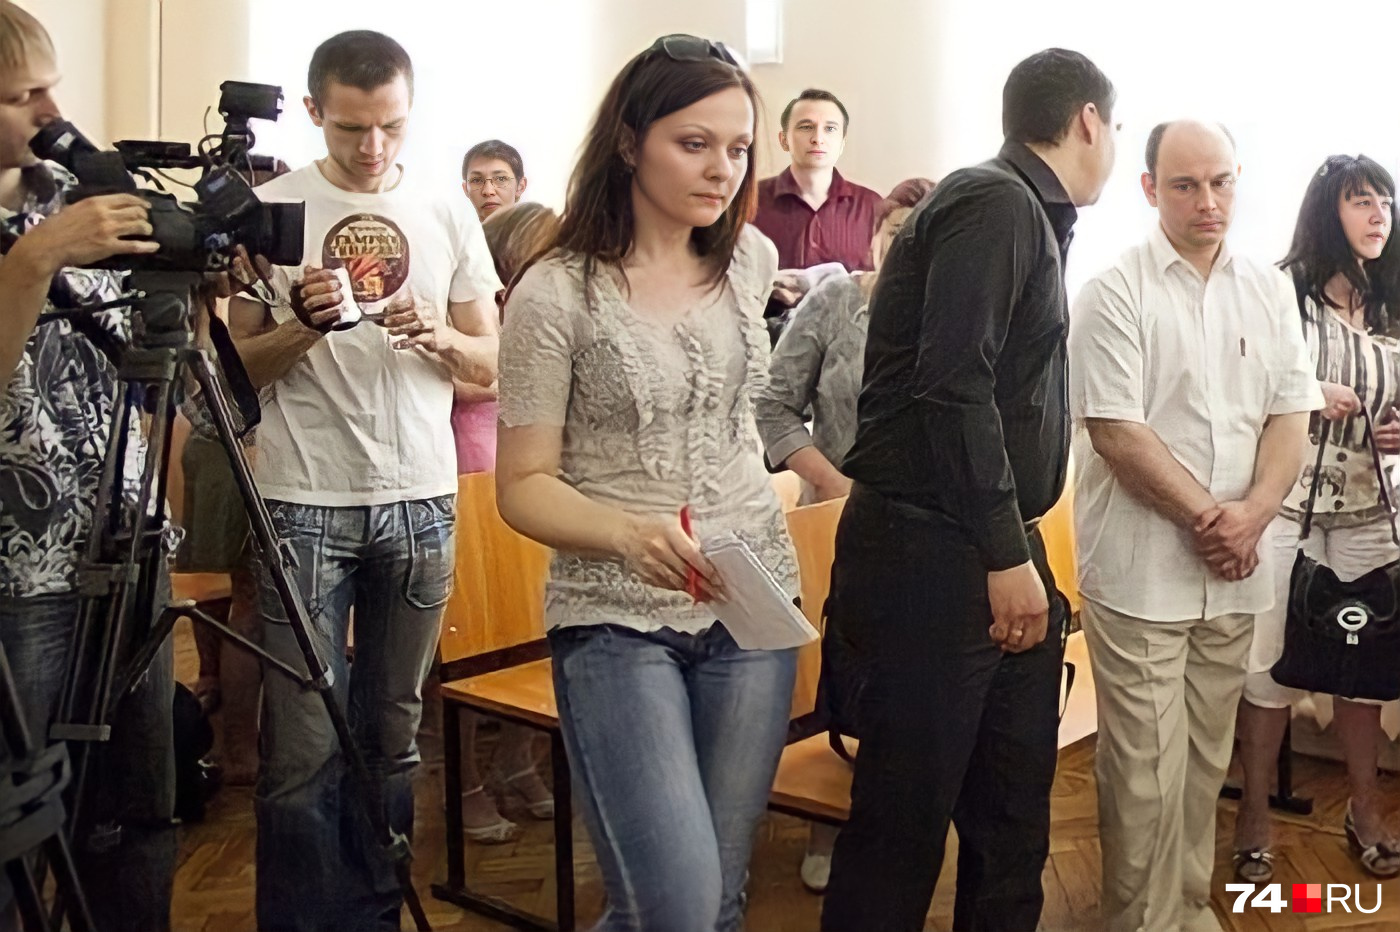 В суде Сергей Абрамов полностью признал вину и ходатайствовал о рассмотрении дела в особом (сокращенном) порядке